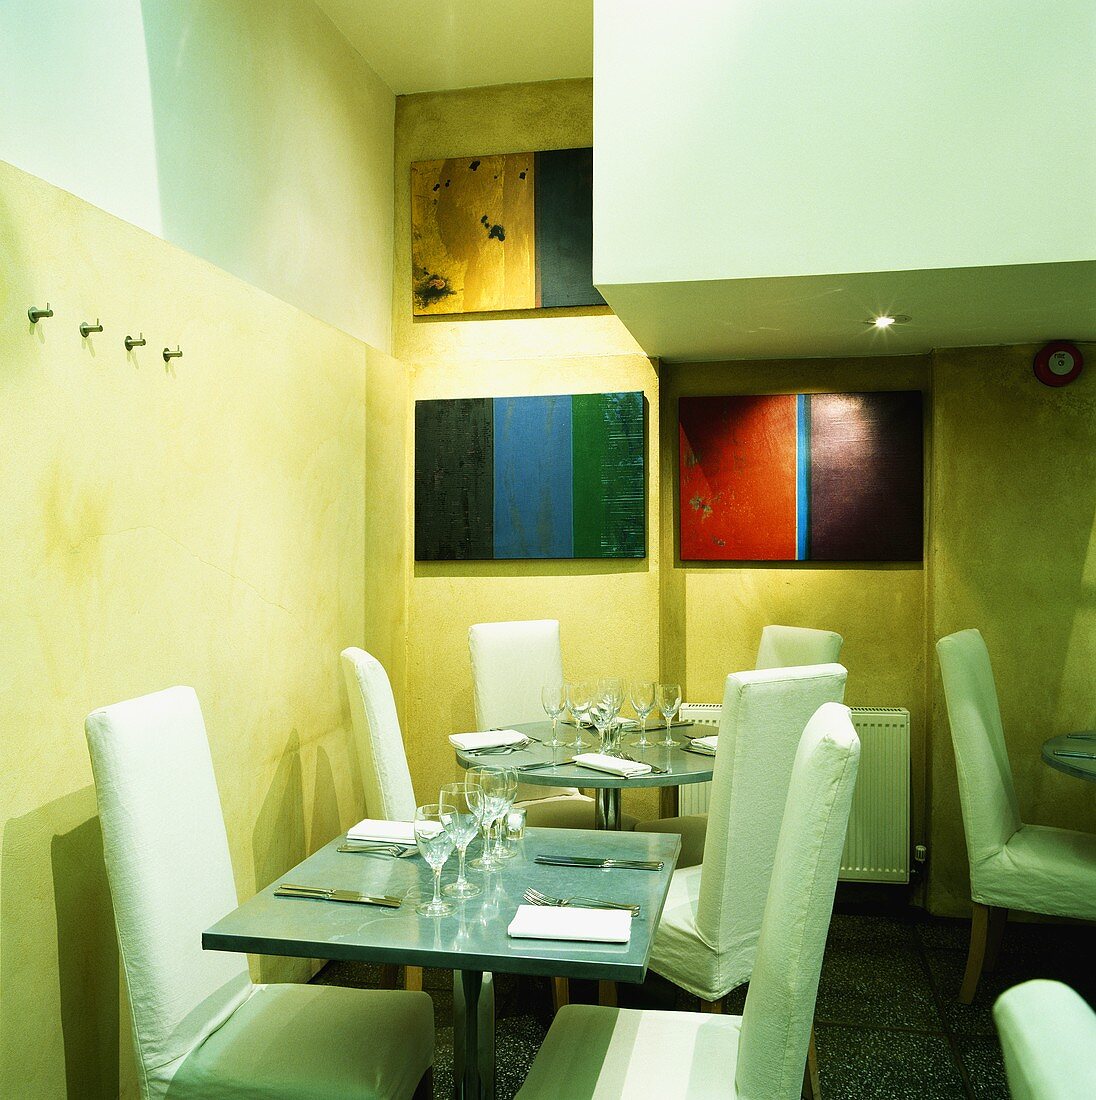 Moderne Tische mit Stühlen in einem Restaurant mit bunten Bildern an den Wänden